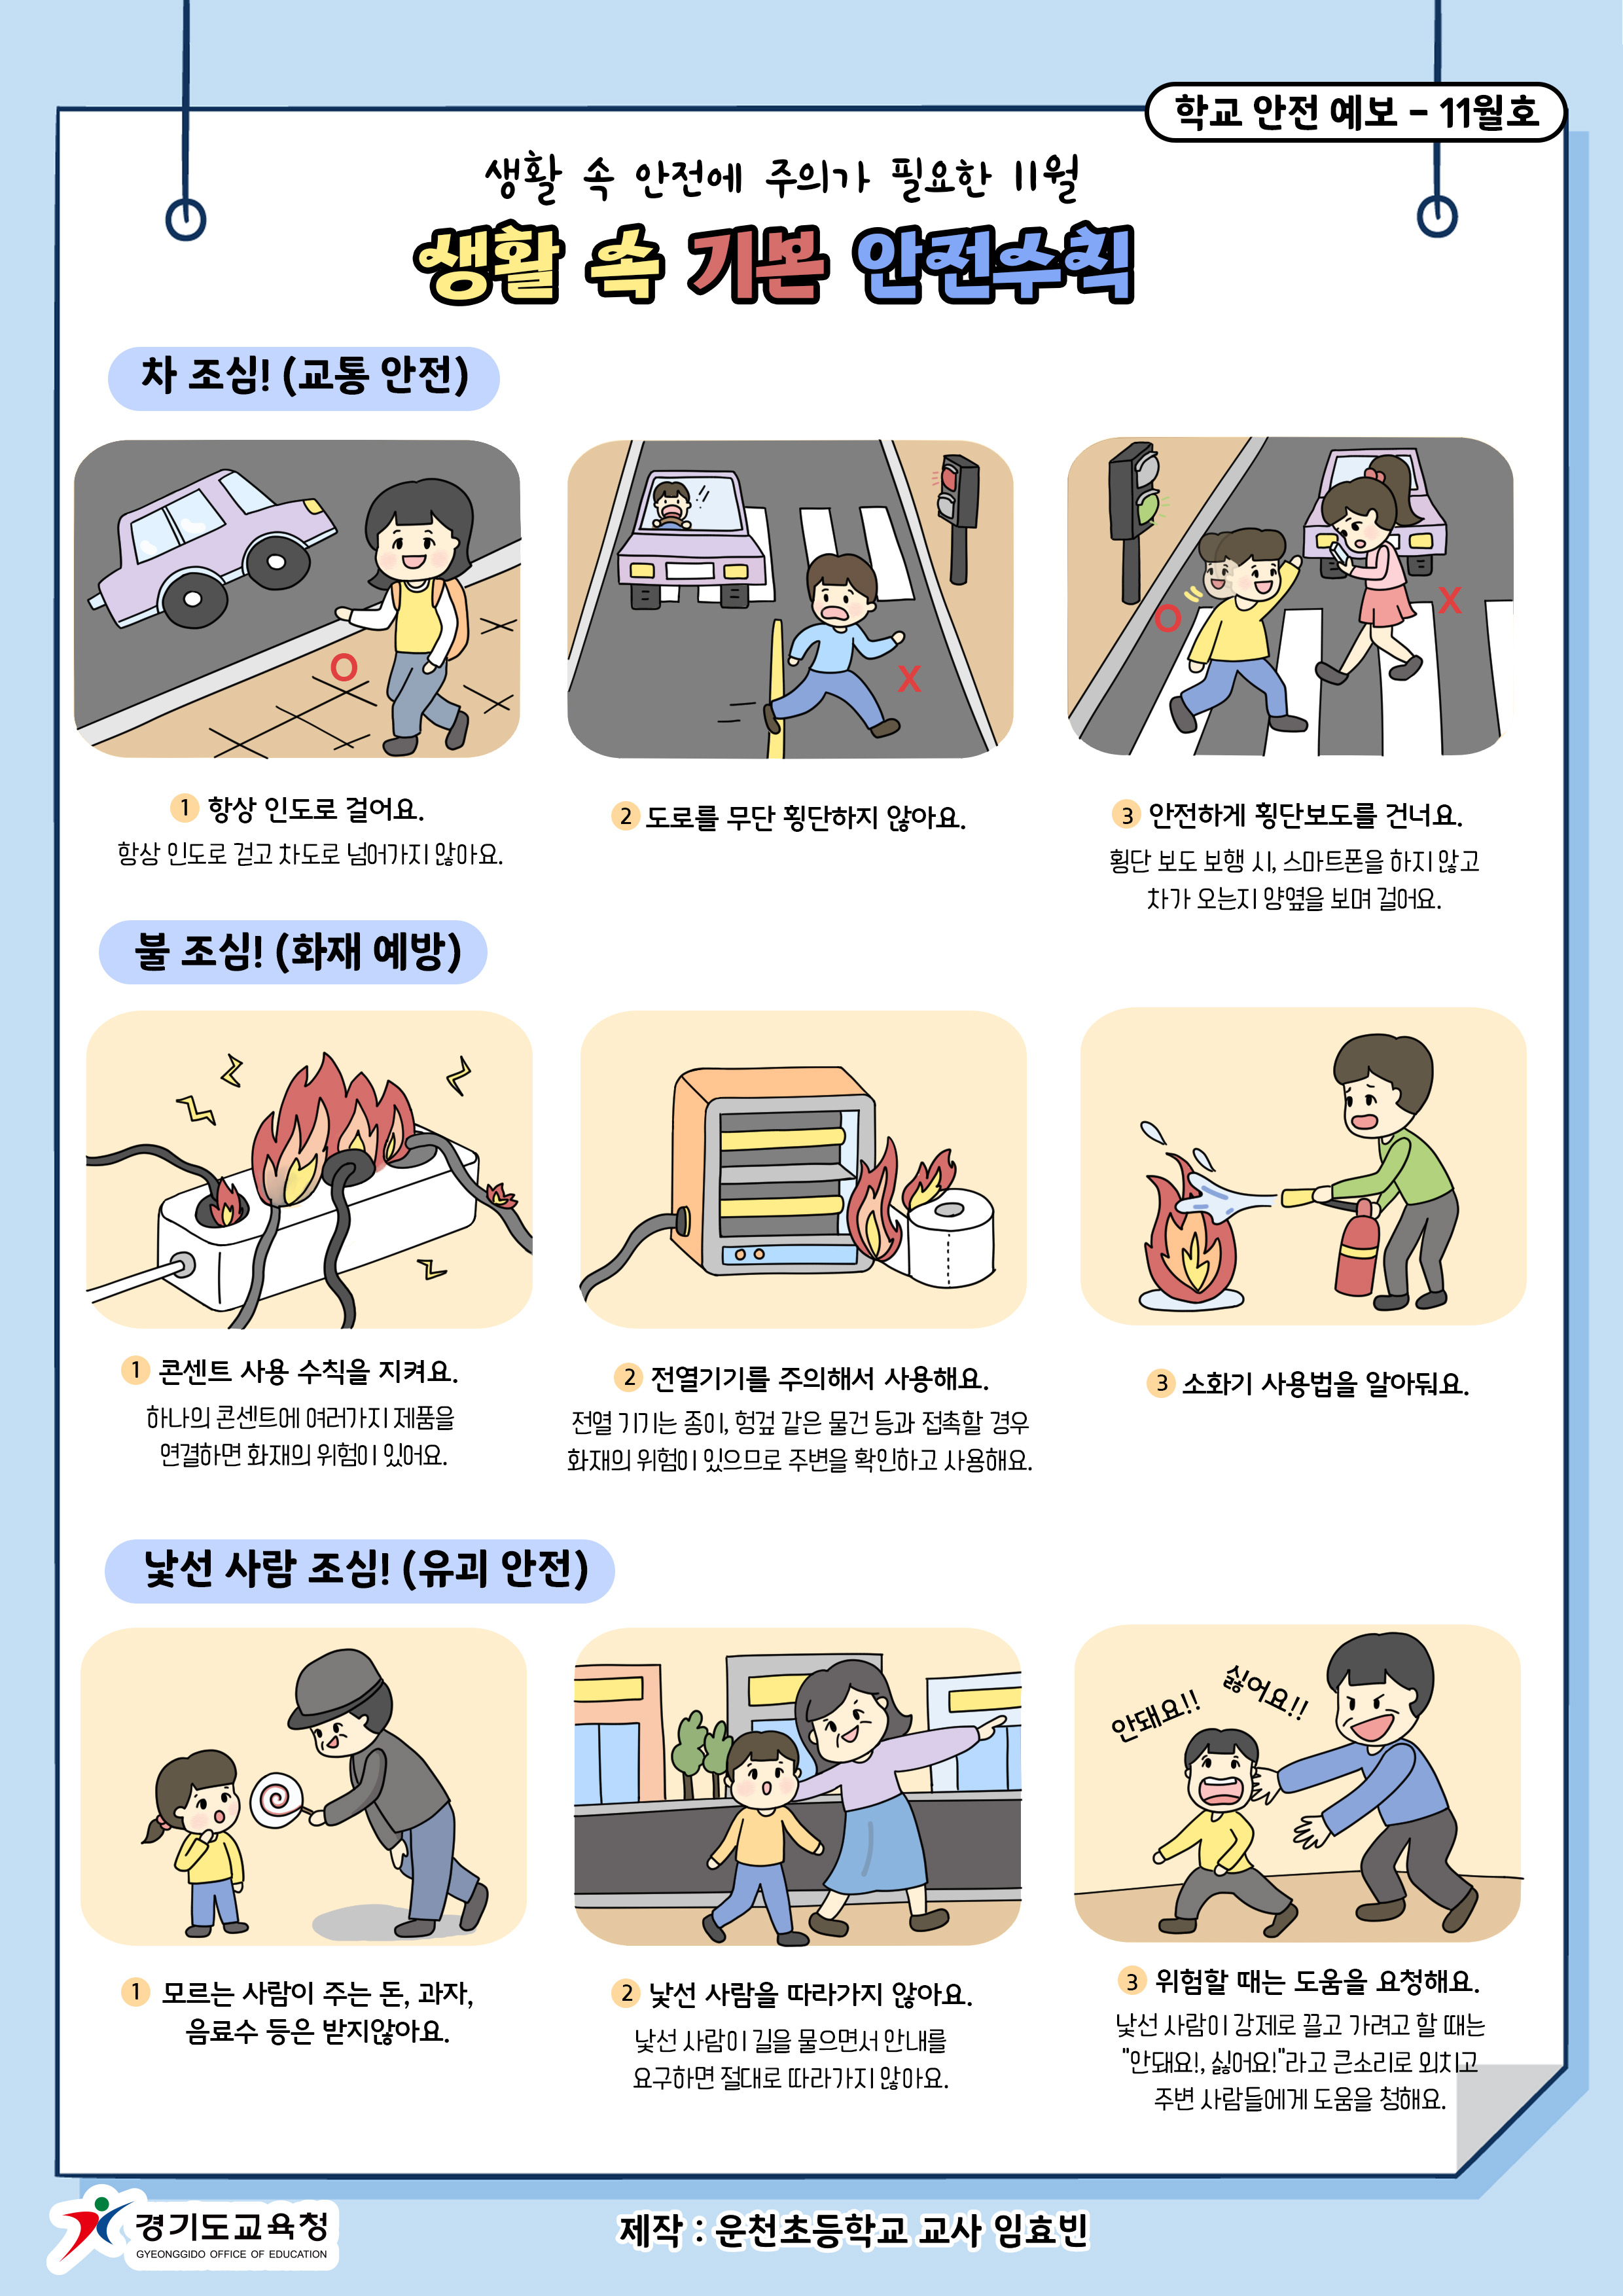 [일반] 제320차 (11월) 안전점검의날 홍보의 첨부이미지 2